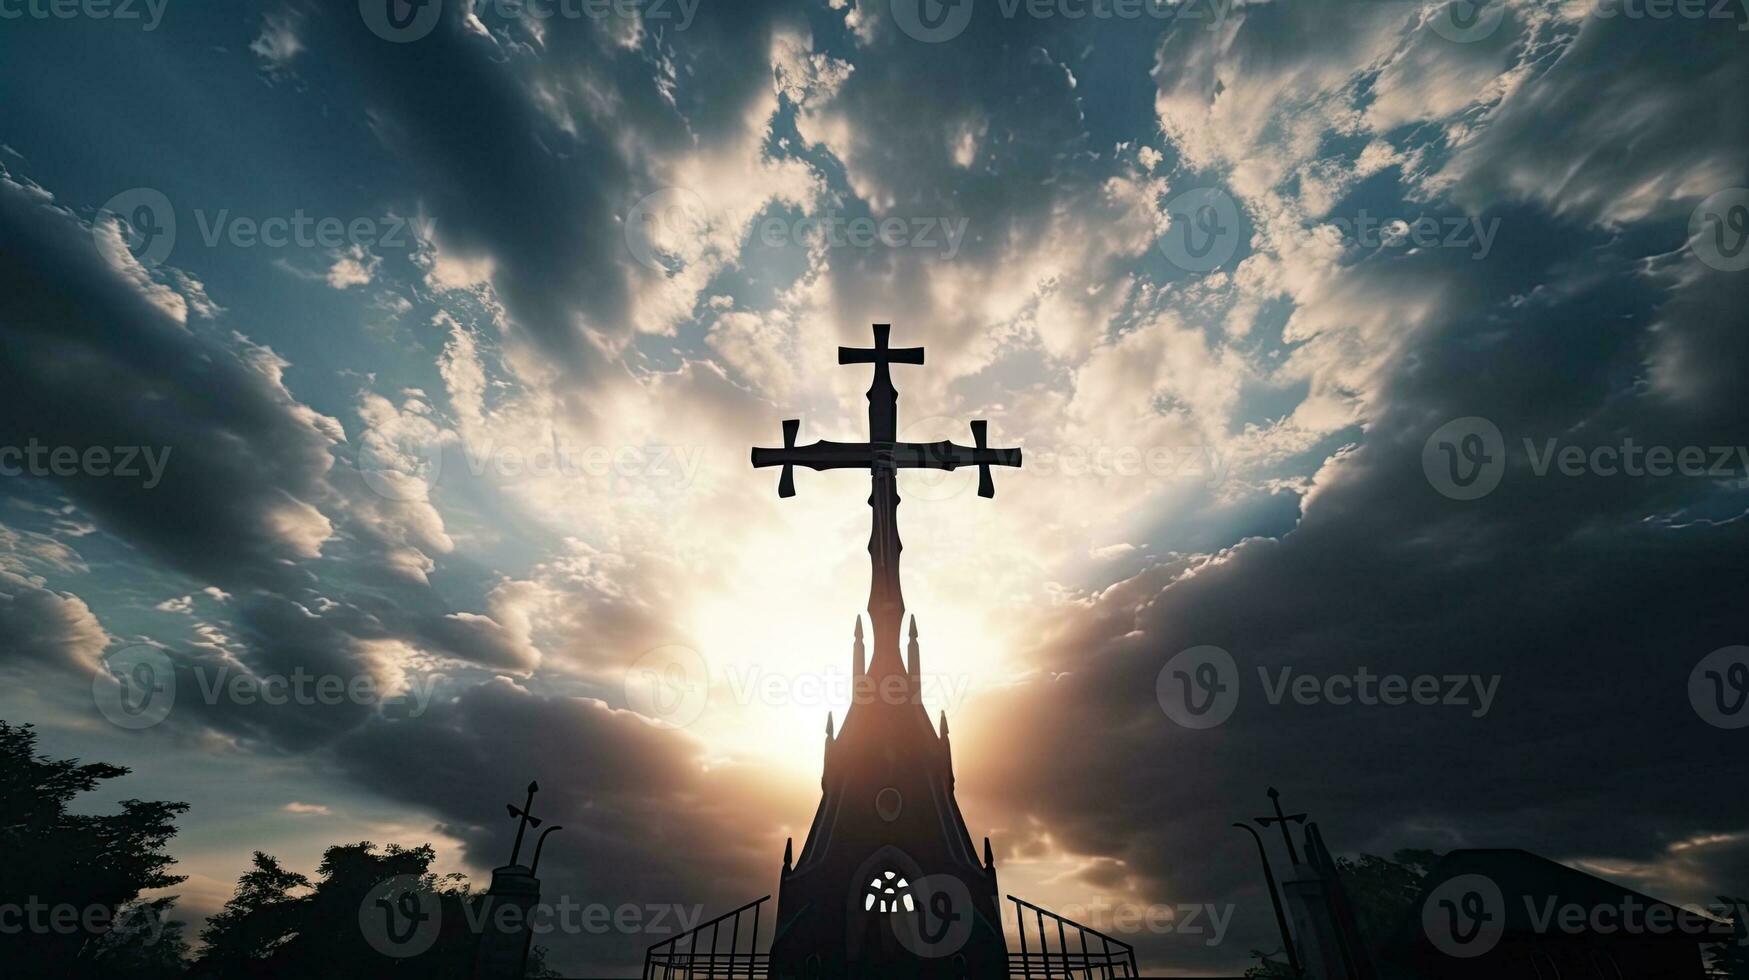 silhouet van kruis en belfort tegen bewolkt lucht Bij Katholiek kerk in altaar van onze dame trsat foto